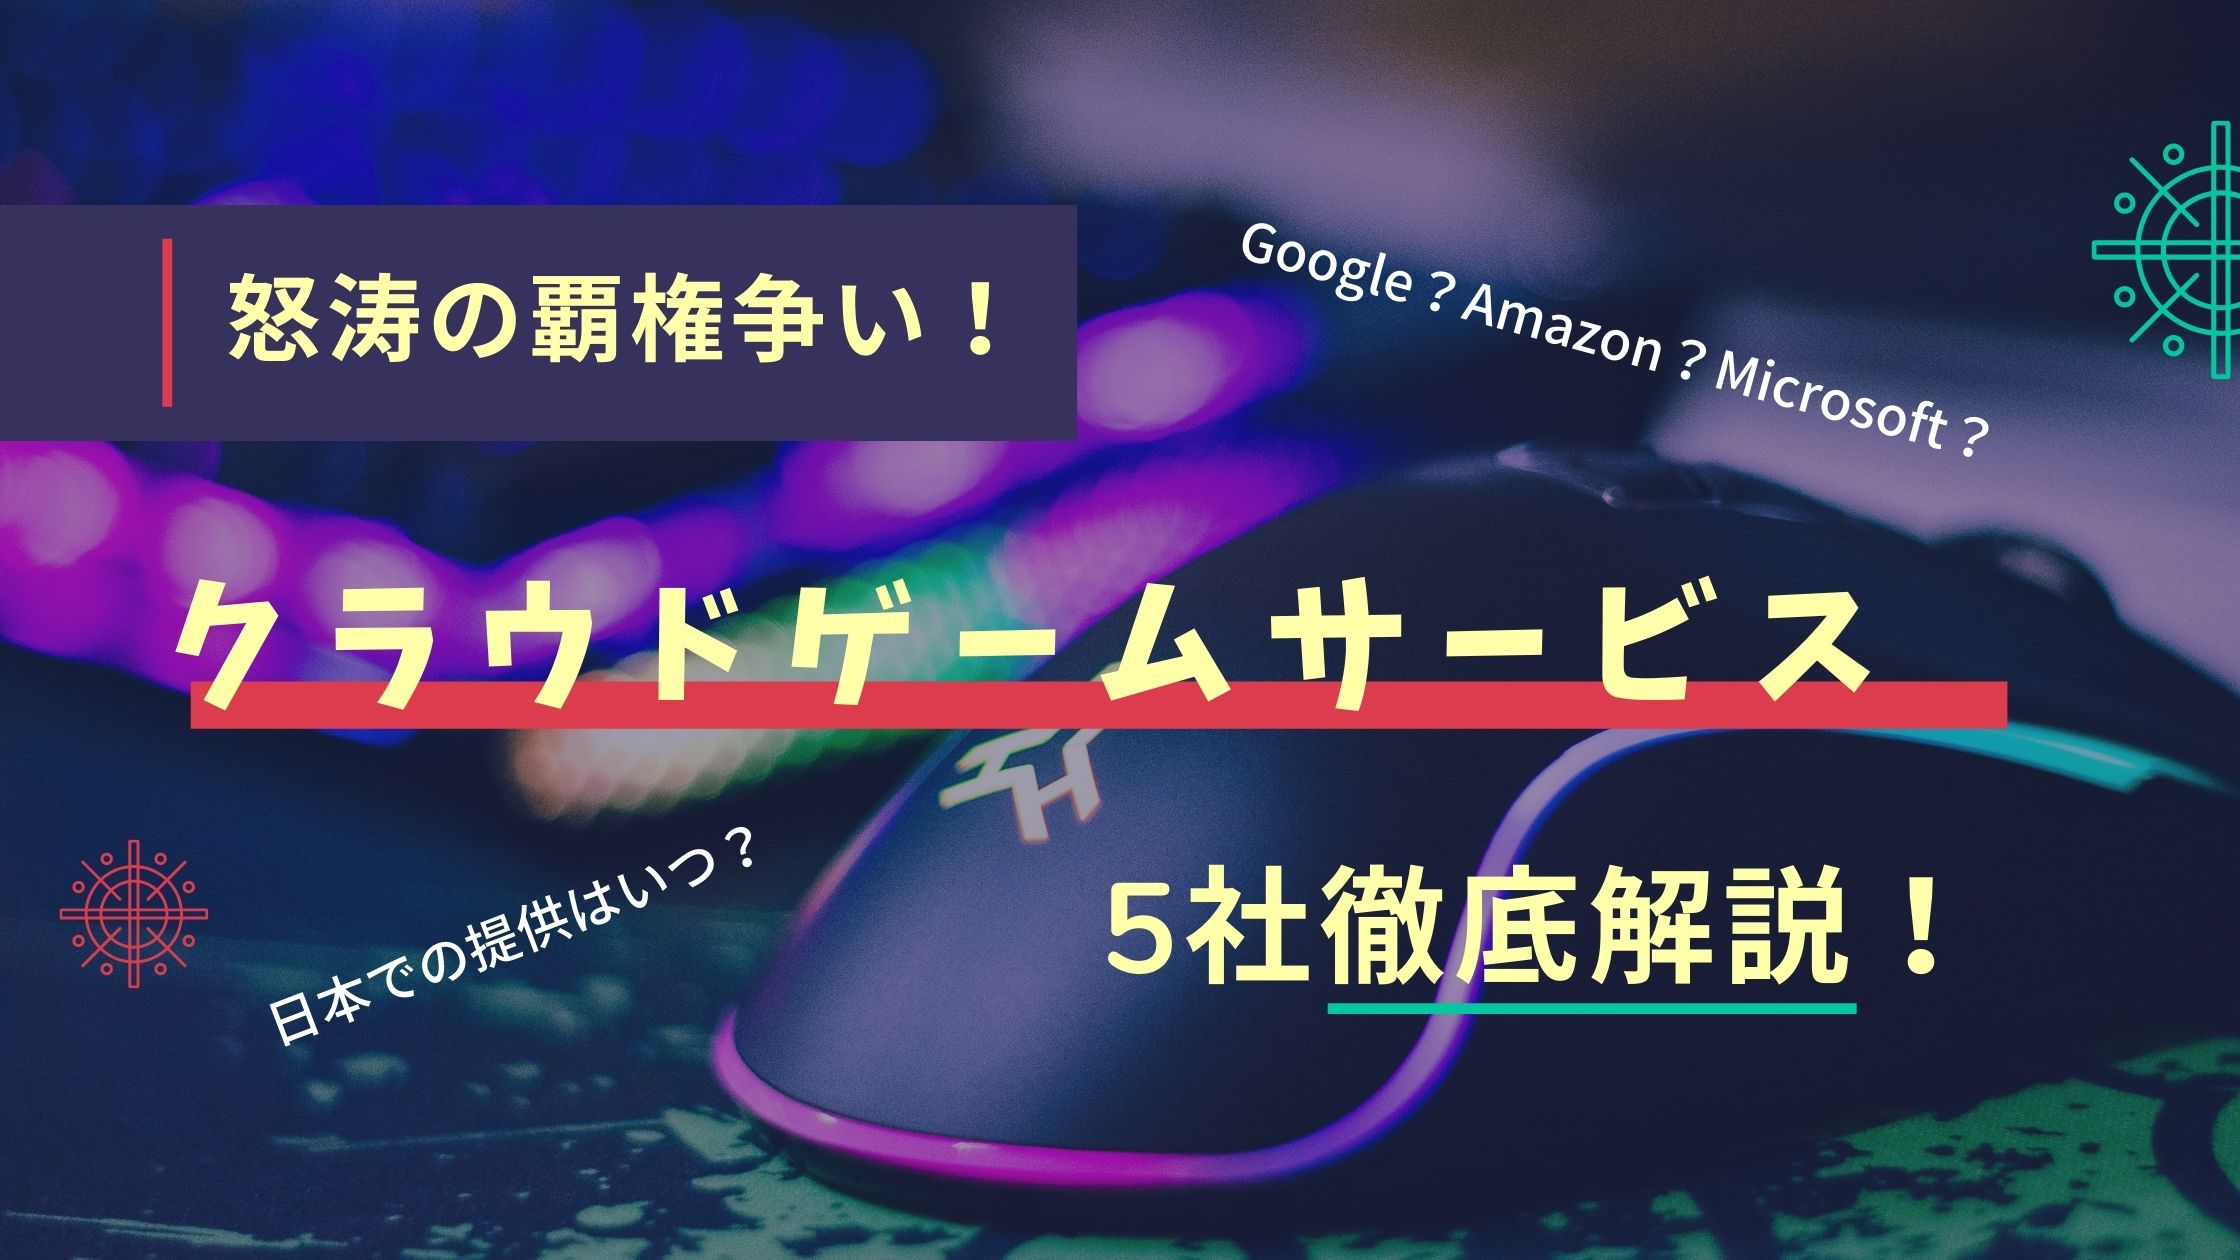 おすすめクラウドゲーム5社紹介 Google Amazon 日本の提供はいつ 5g到来で高まる期待 Gm Life